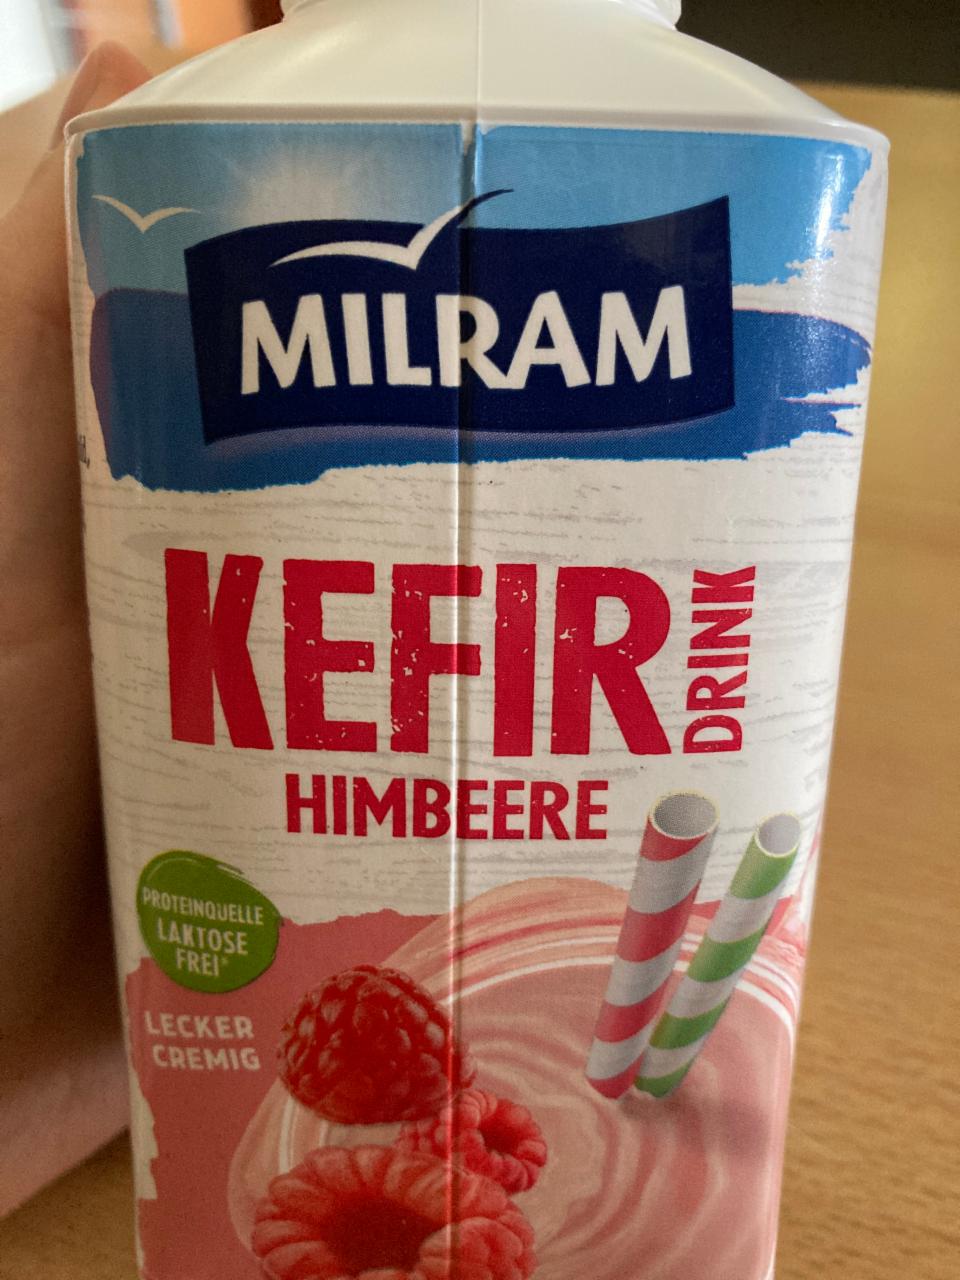 Фото - Кефирный напиток малина KEFIR NIMBEERE Drink Milram